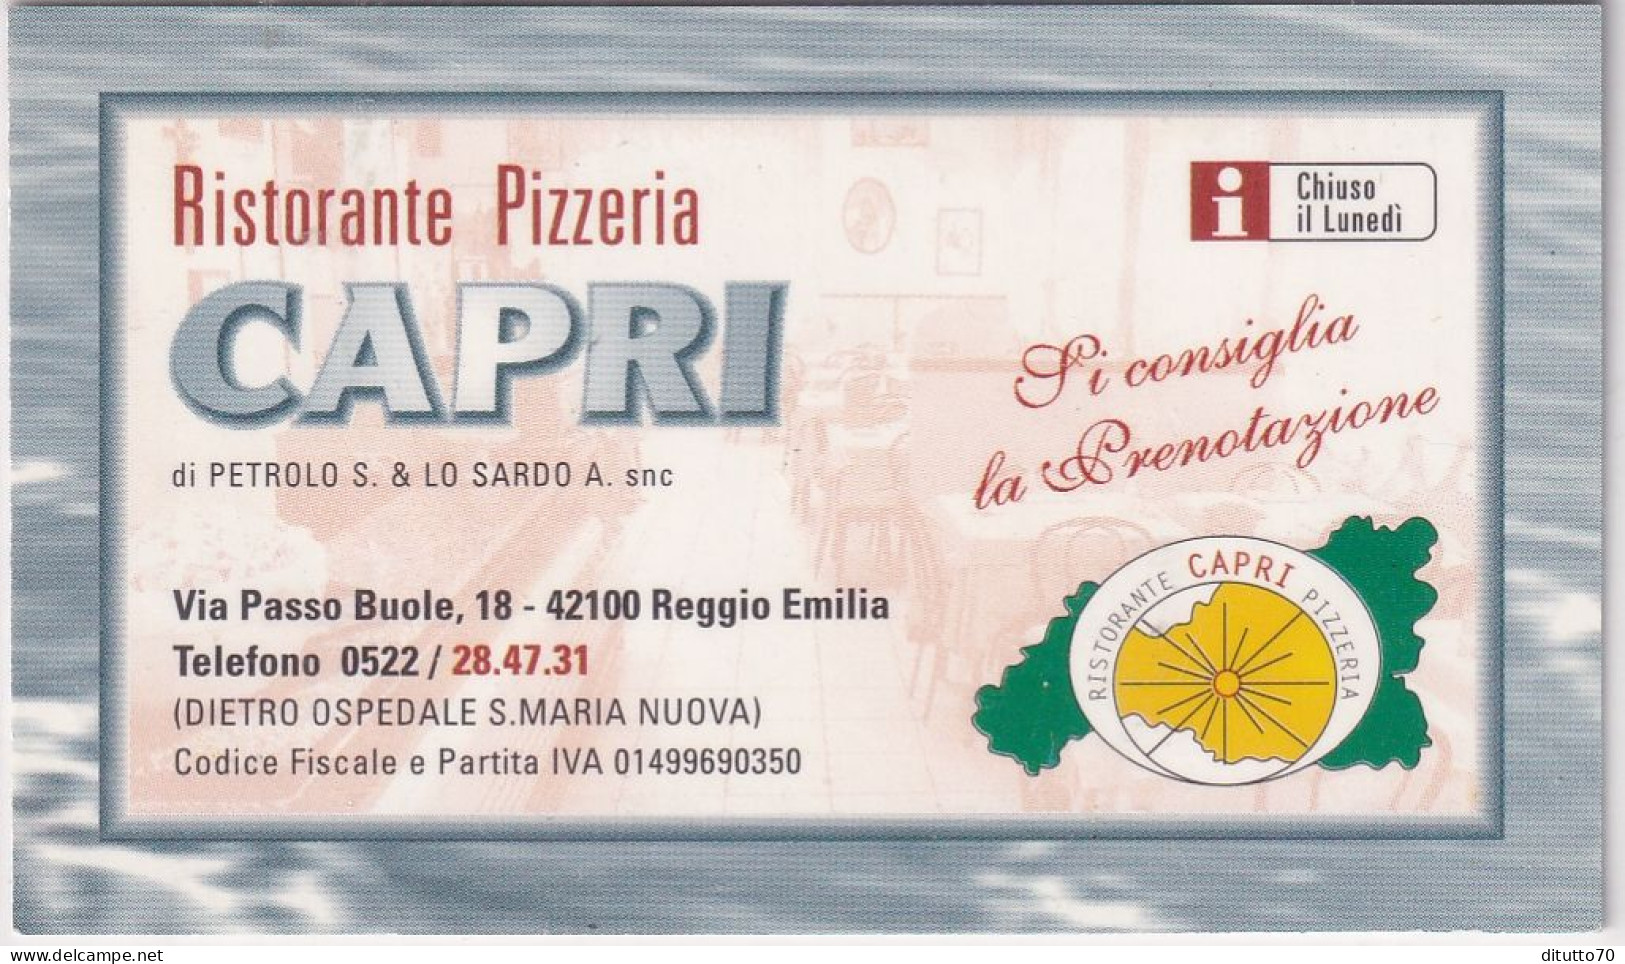 Calendarietto - Caprii - Ristorante - Pizzeria  - Reggio Emilia - Anno 1998 - Kleinformat : 1991-00